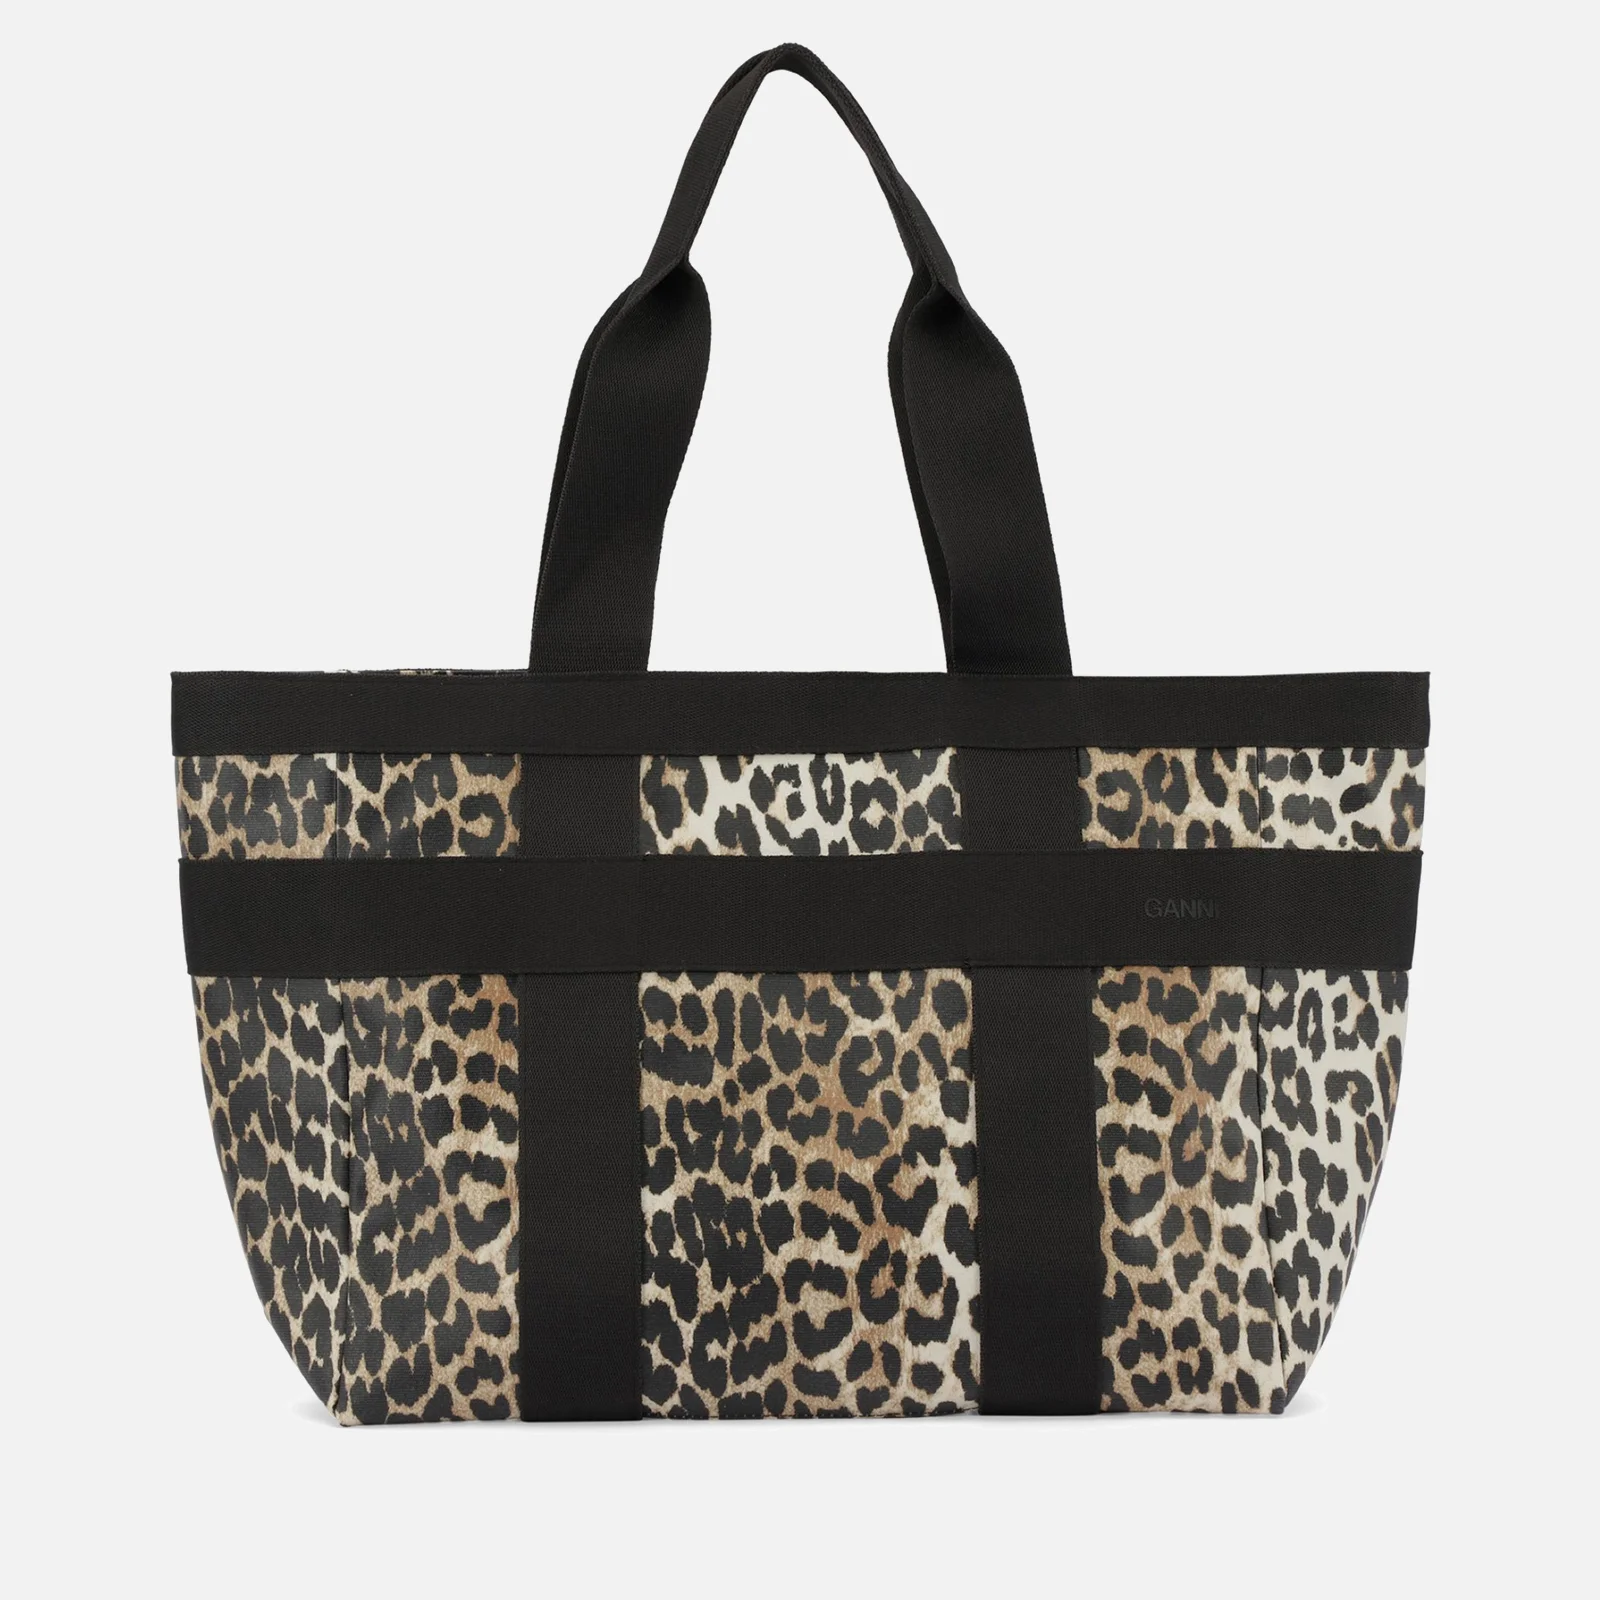 Ganni Women's Canvas Tote Bag - Leopard Image 1